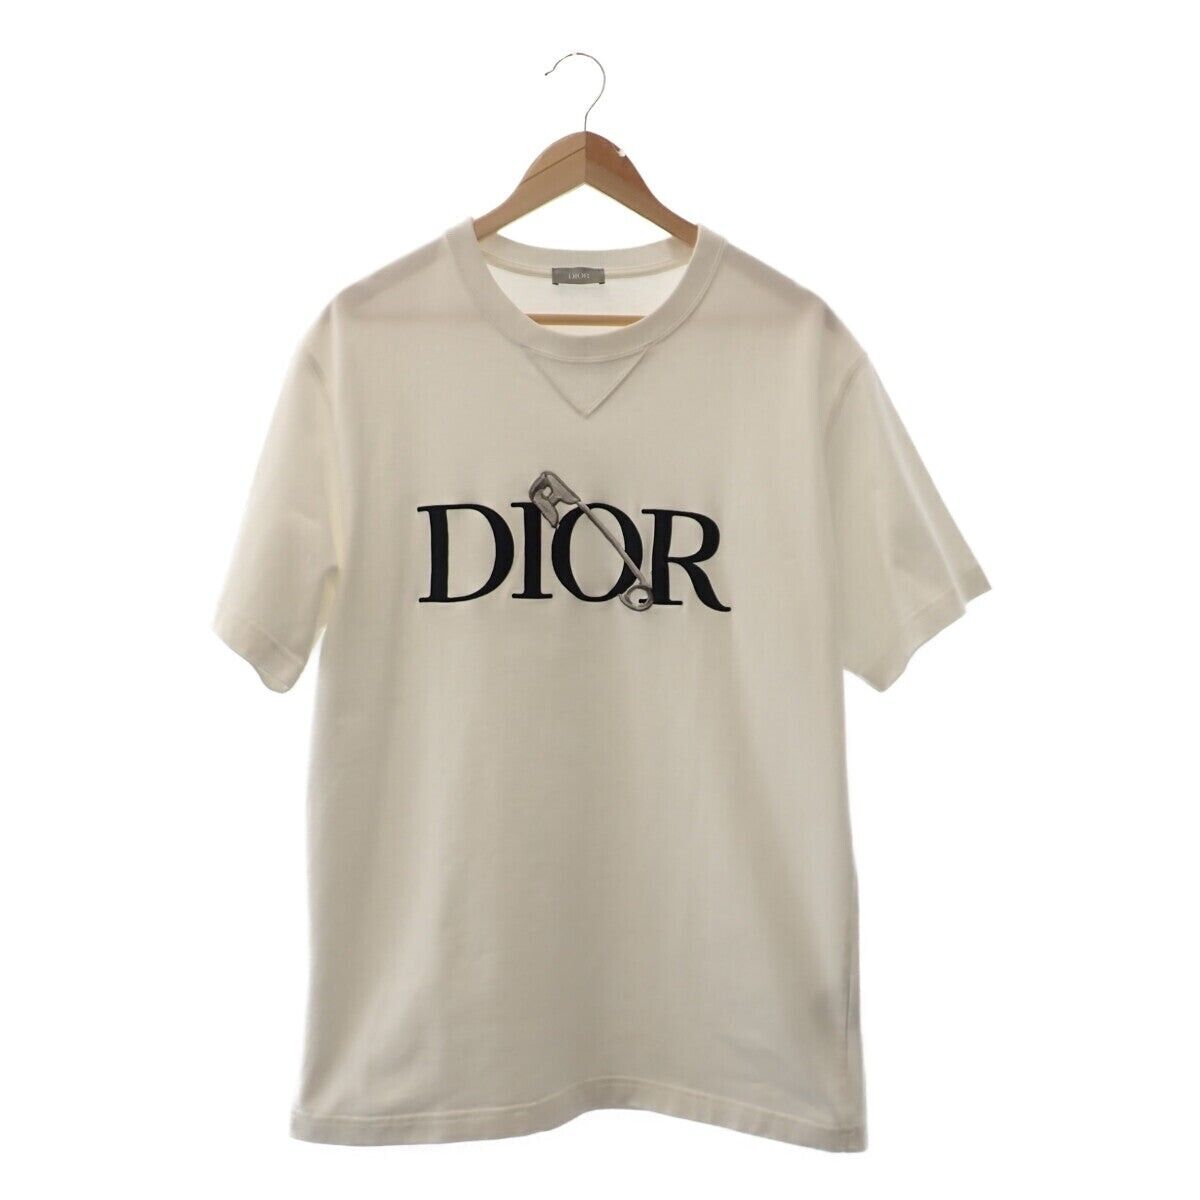 完売レア Dior  Tシャツ Judy Blameコラボ キッズ Sサイズすり替え防止のため返品不可です